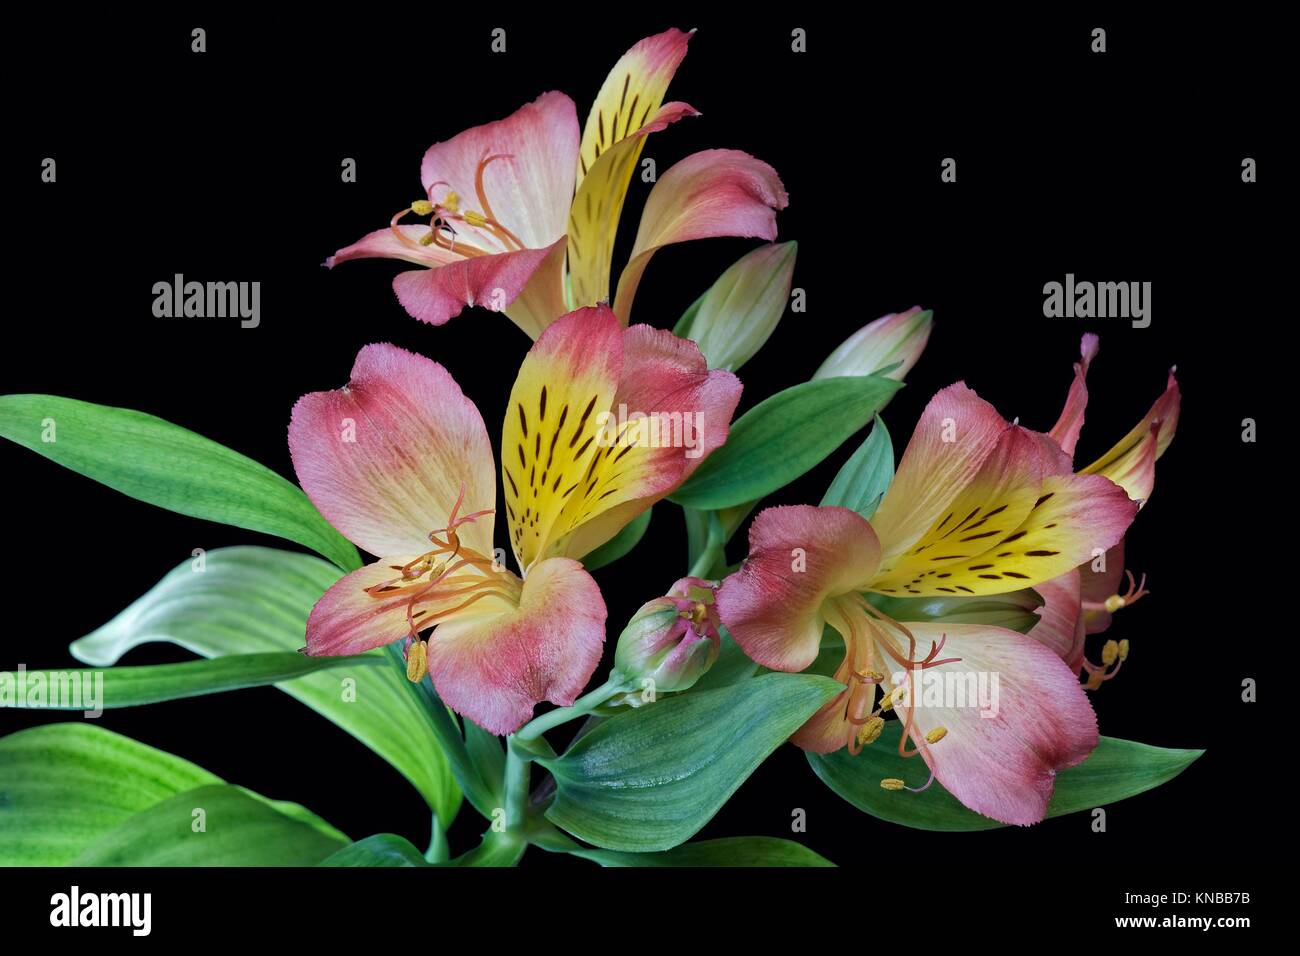 Lily péruvienne (Alstroemeria x hybride). Appelé aussi Lis des Incas. Image de fleurs sur fond noir. Banque D'Images